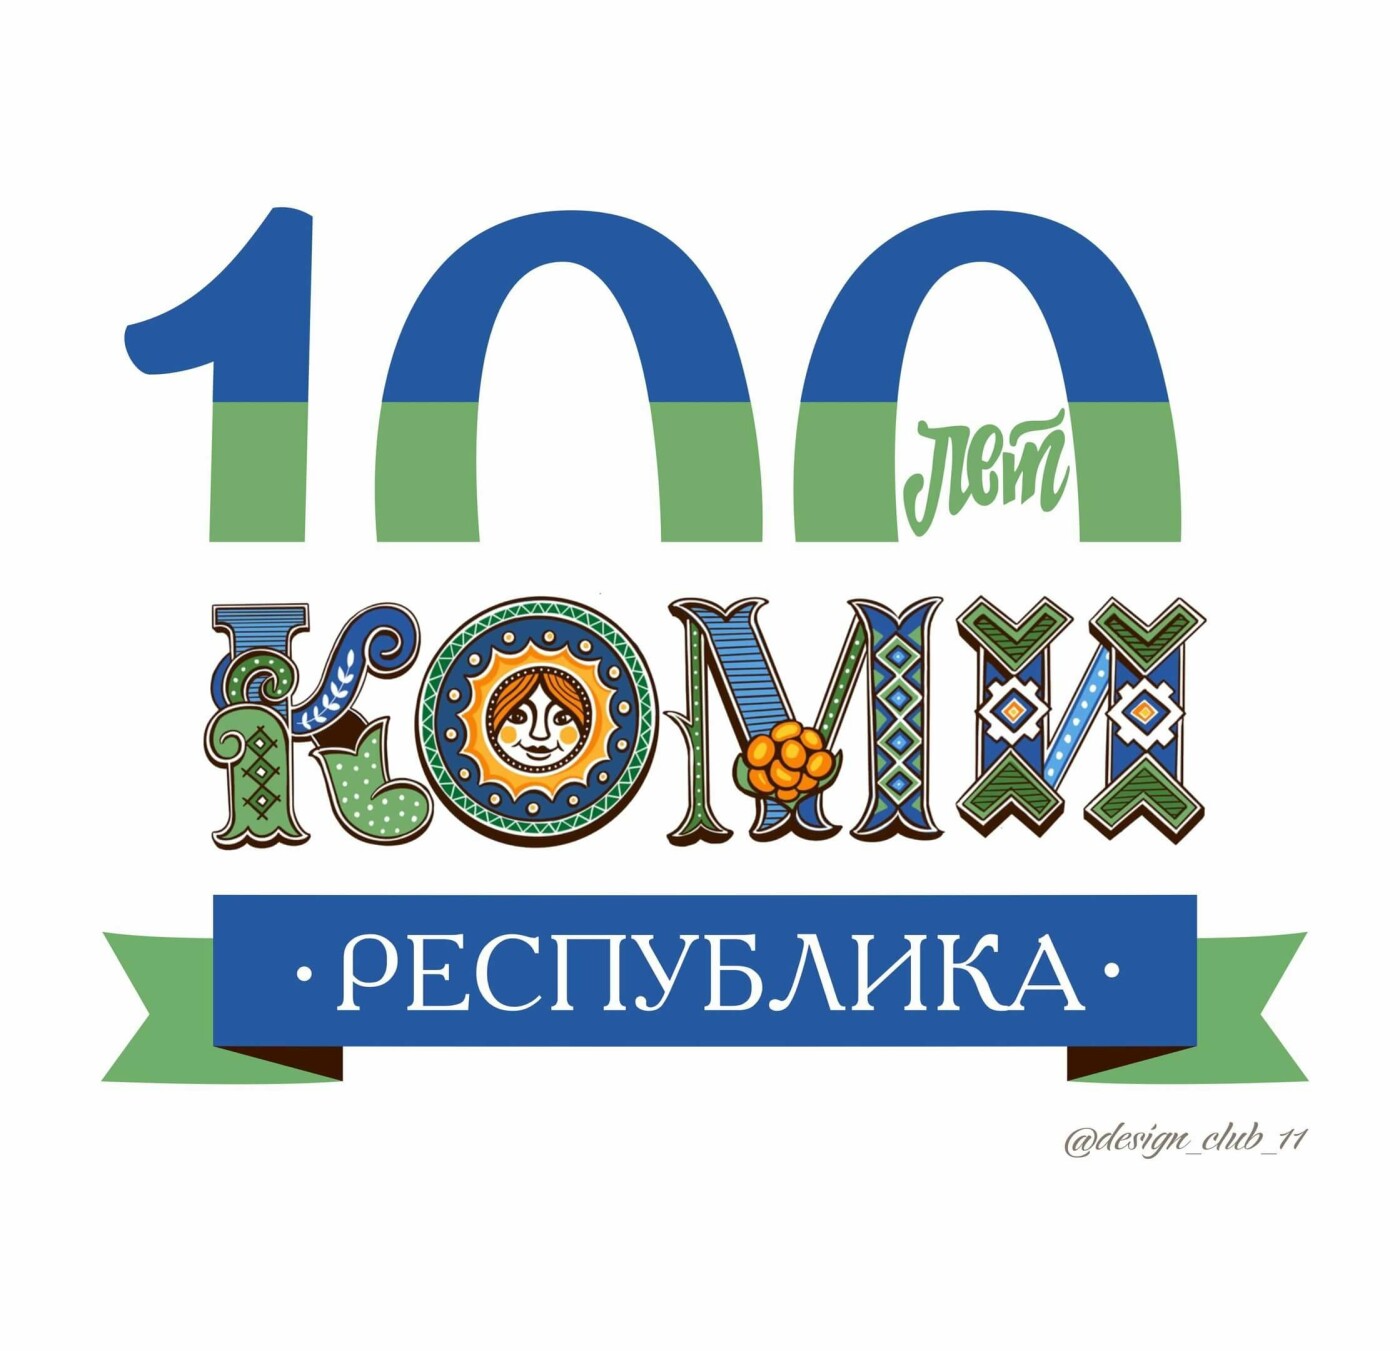 Пример логотипа к 100-летию Коми, 100 лет Республике Коми